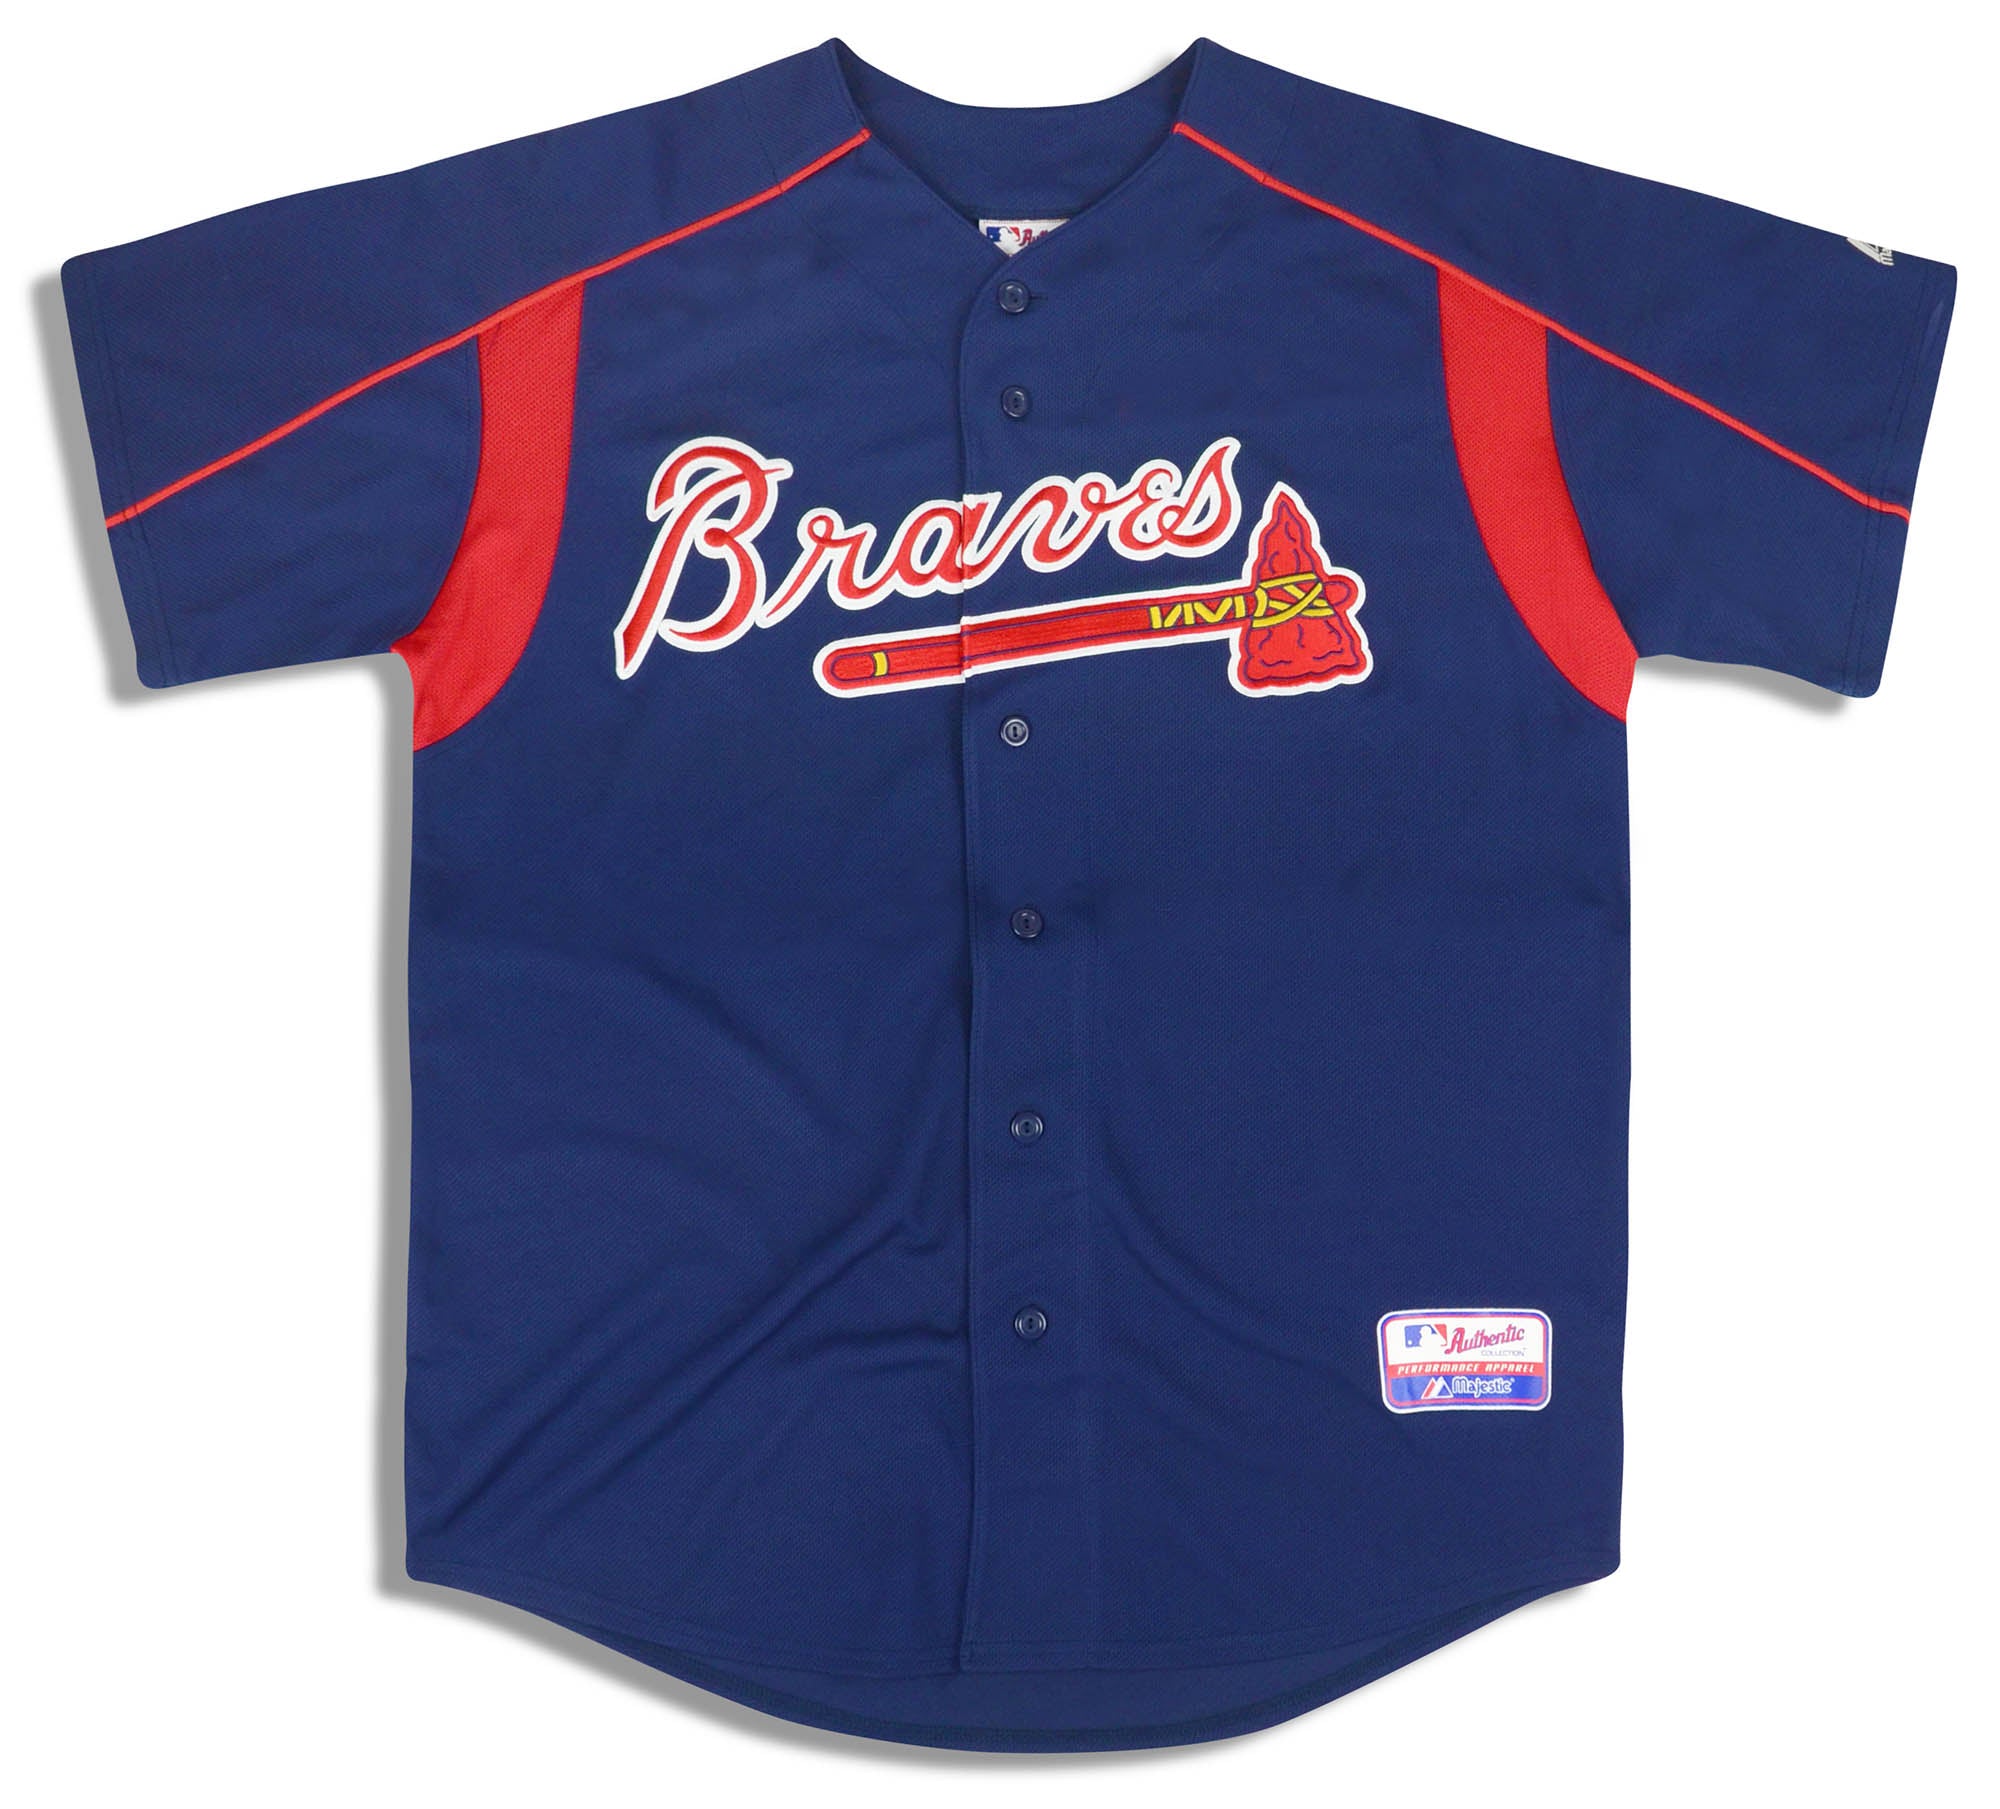 Atlanta Braves Baseball Jerseys, Braves Jerseys, Authentic Braves Jersey